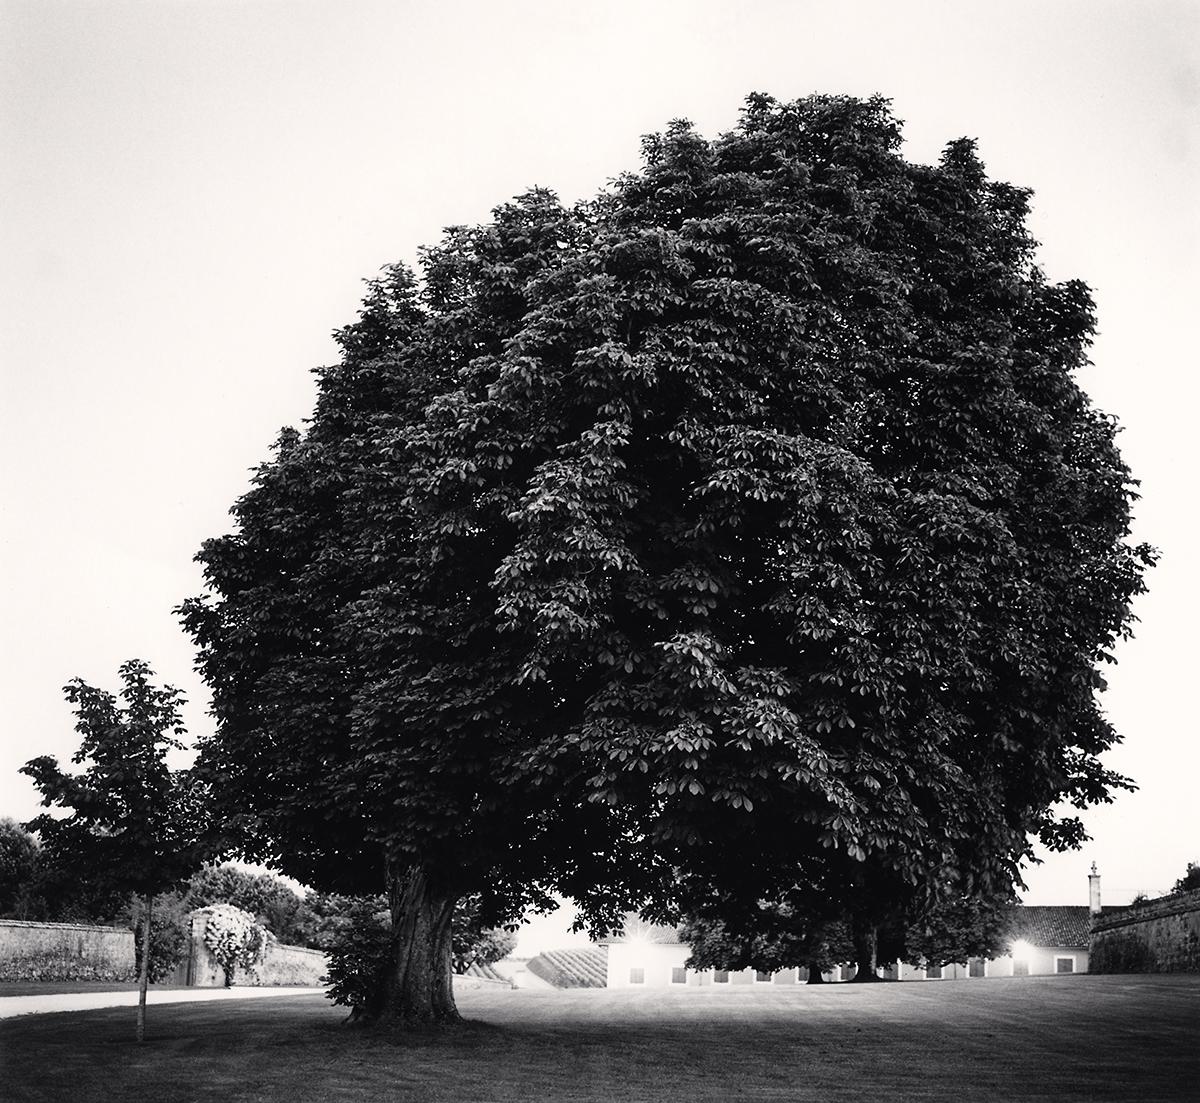 Chateau Lafite Rothschild, Study 12, Bordeaux, Frankreich von Michael Kenna zeigt einen üppigen, scheinbar überdimensionalen Baum, der die Landschaft dominiert. Die Gebäude im Hintergrund lugen hinter dem Laub des Baumes hervor. Die detaillierten